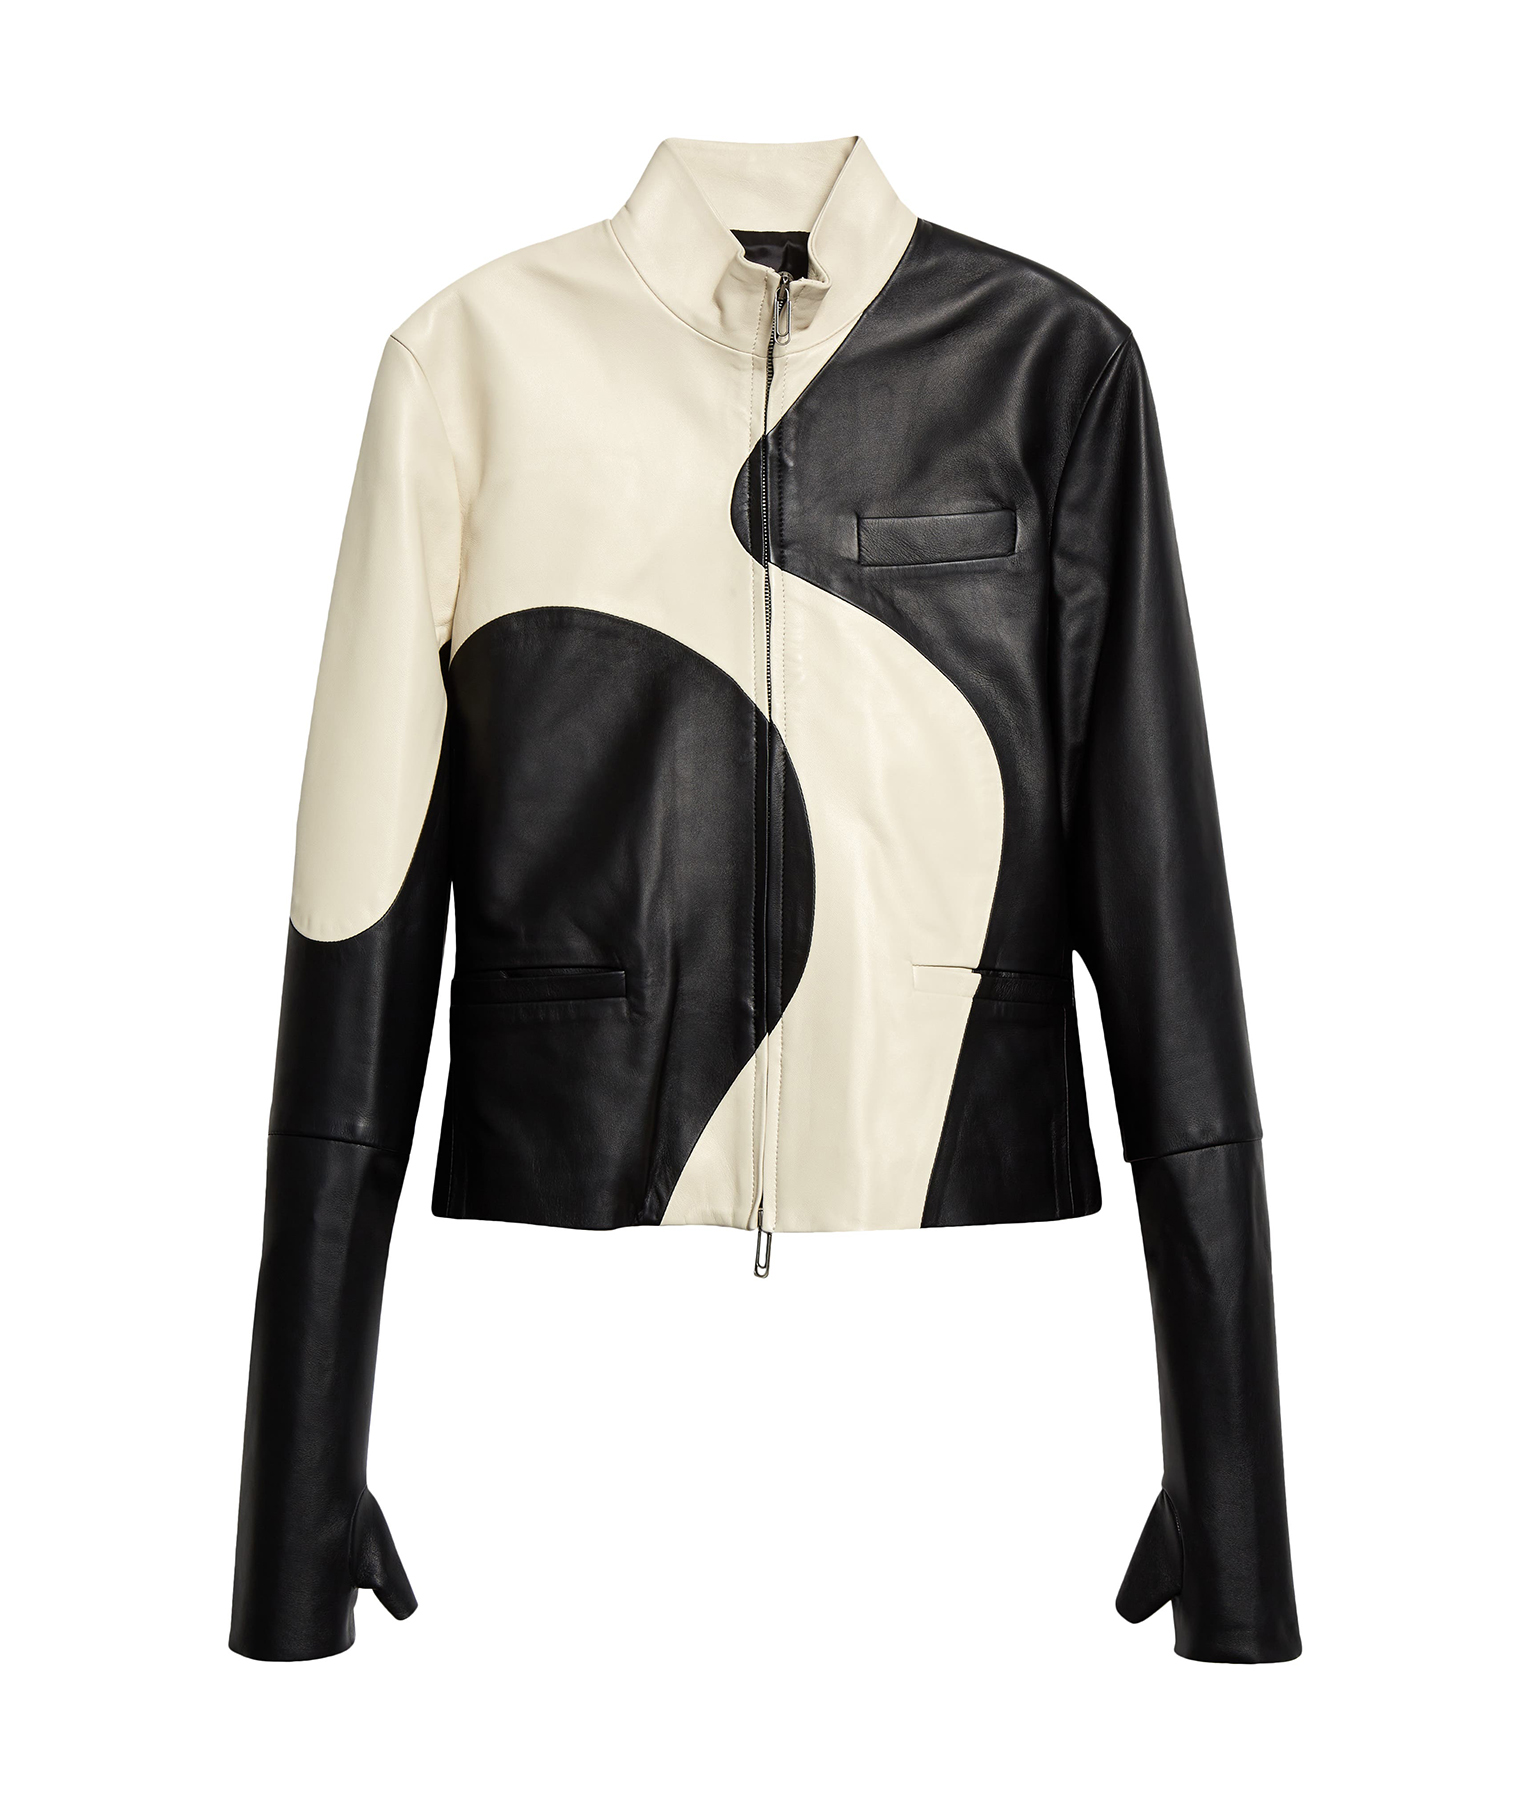 Usher Black and white Leather Jacket5